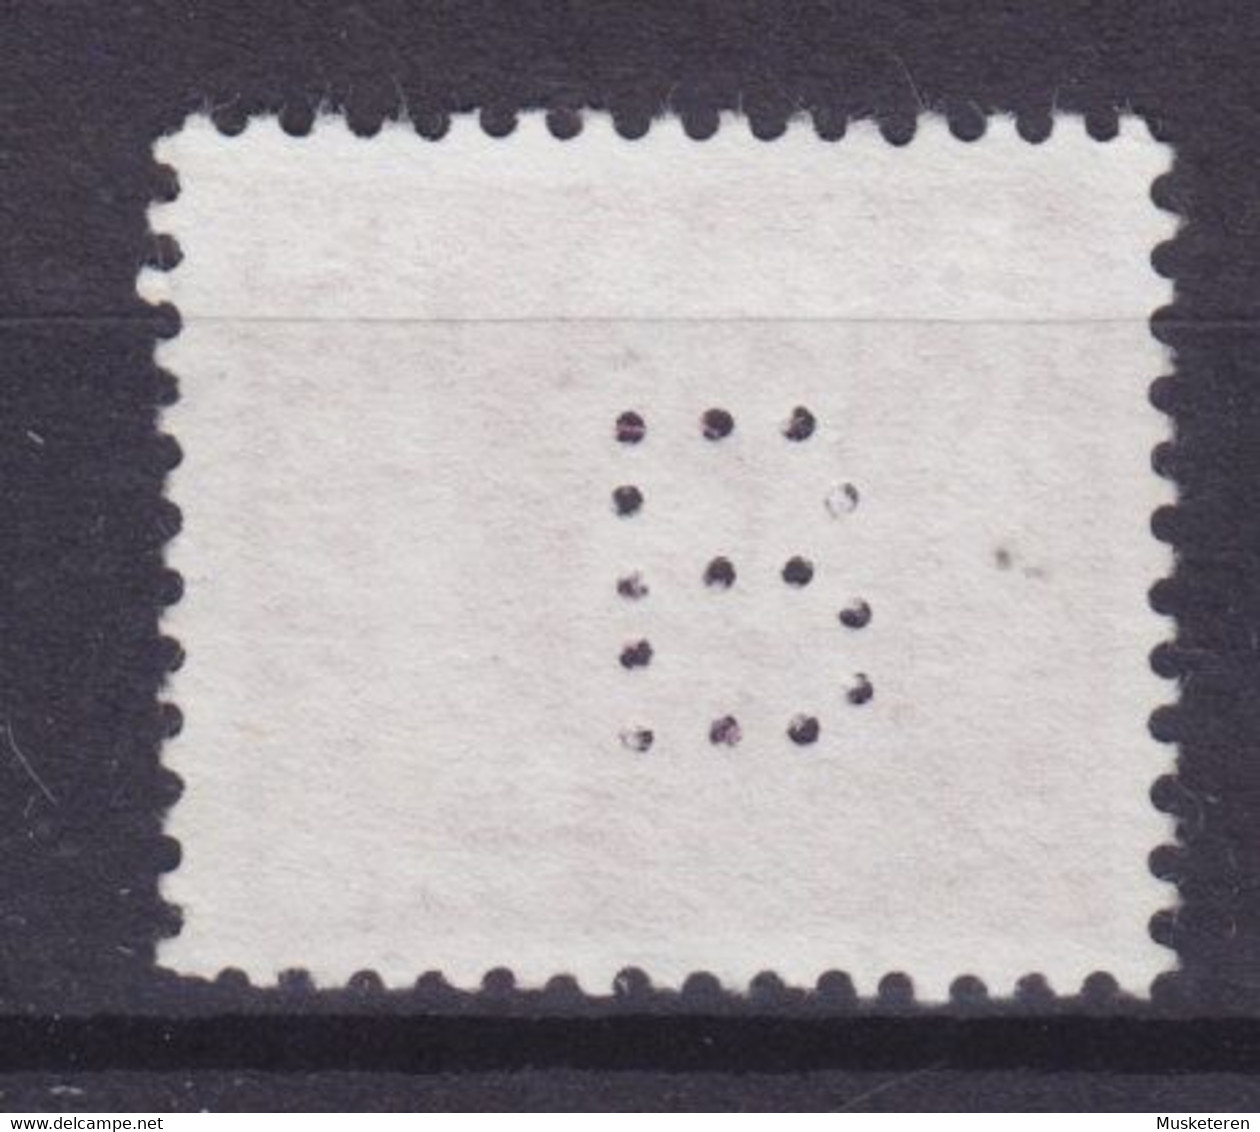 Denmark Perfin Perforé Lochung (B01) 'B' F.E. Bording, København Wellenlinien Stamp (2 Scans) - Abarten Und Kuriositäten